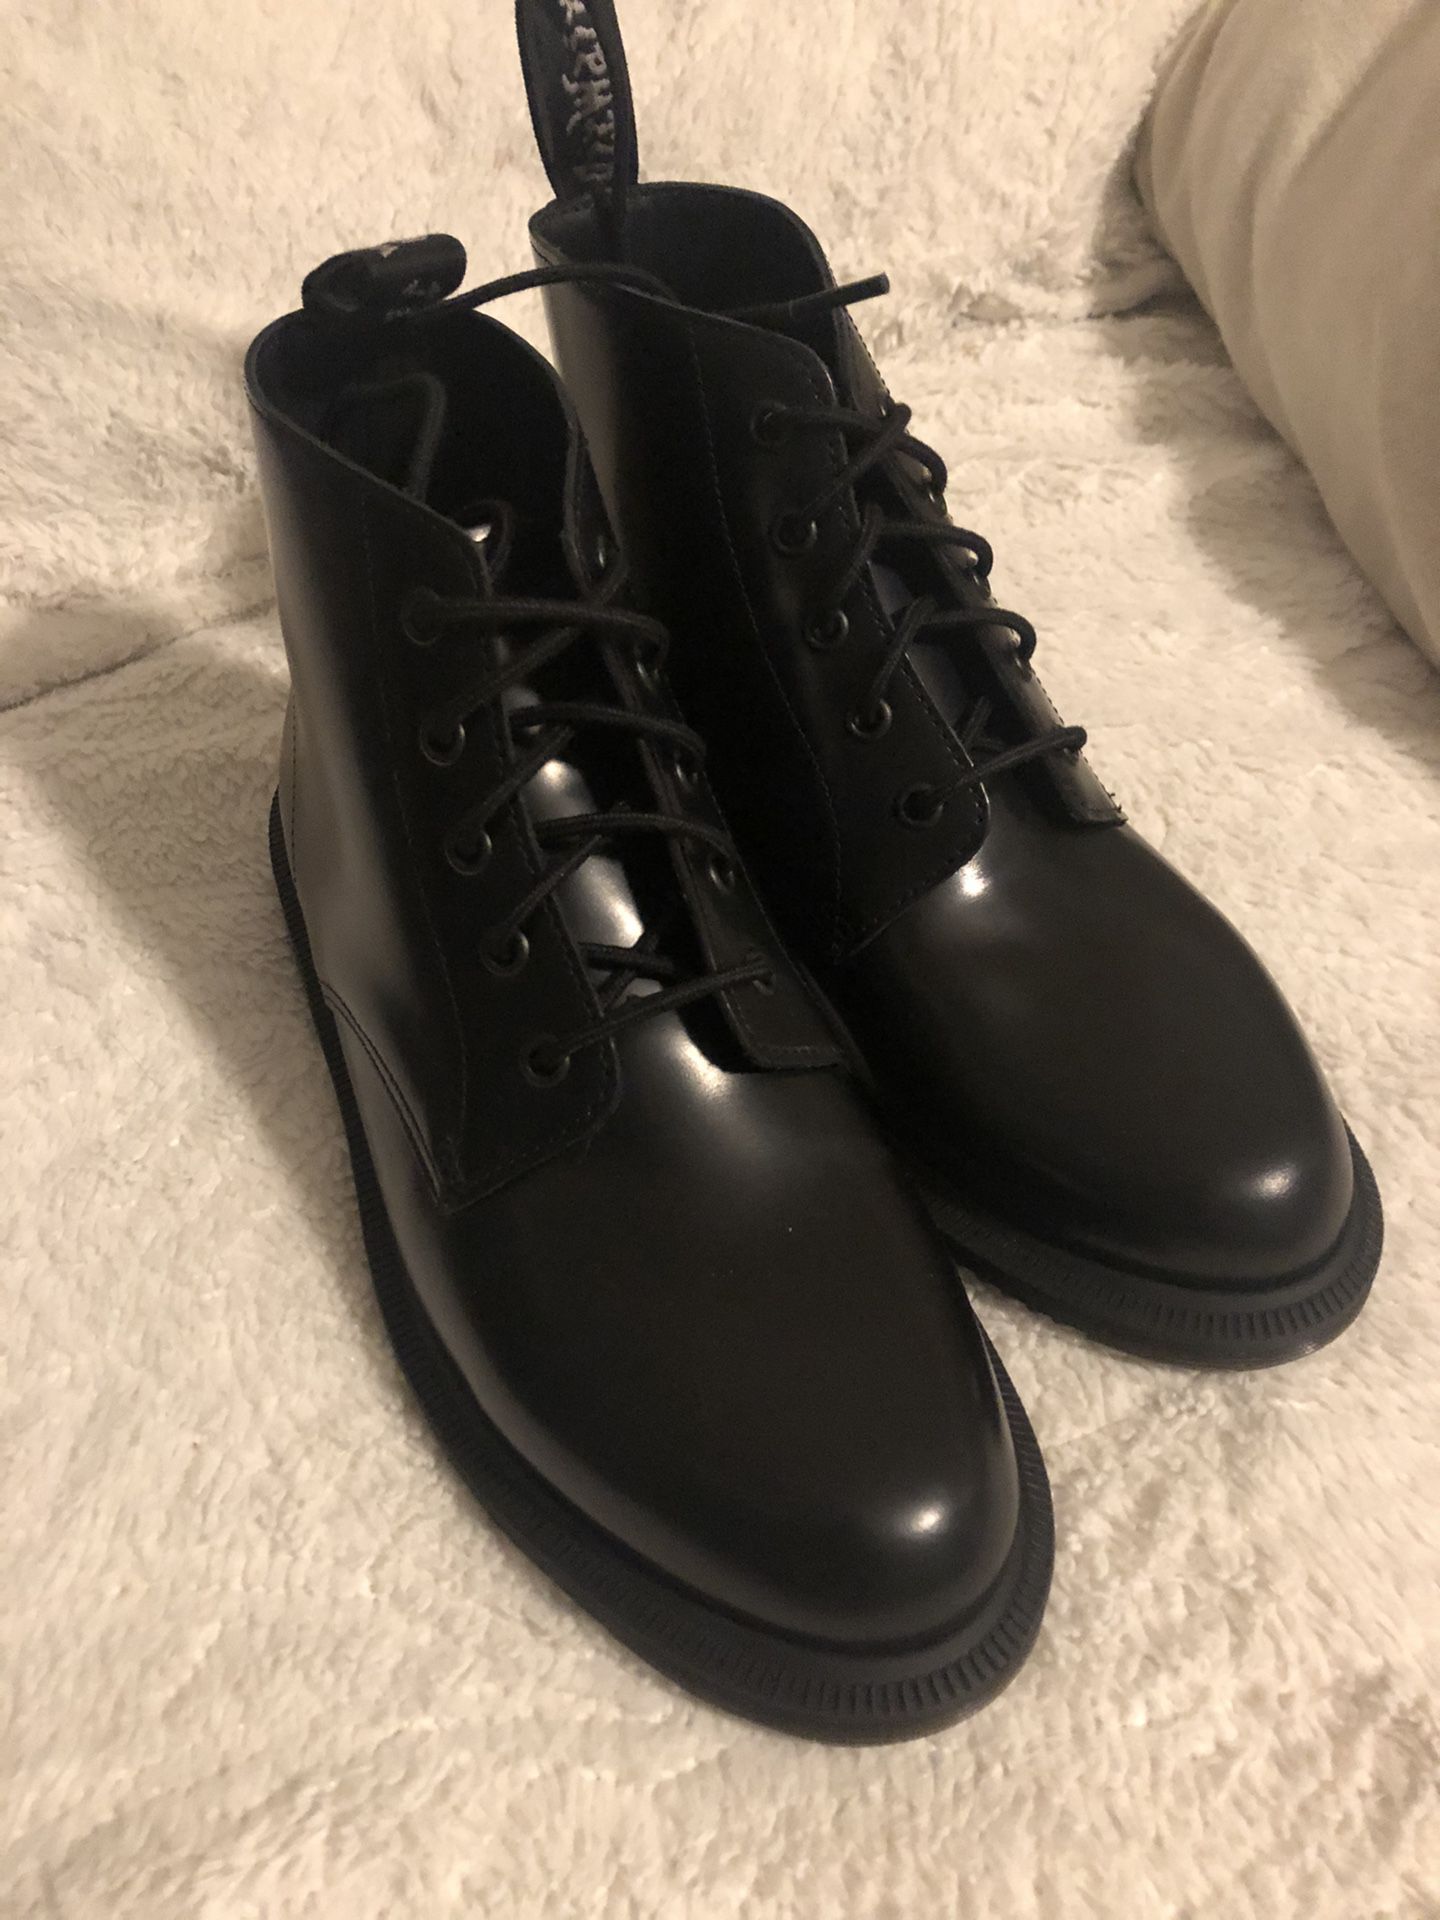 Doc Martens Emmeline Boots in Black Polished Smooth